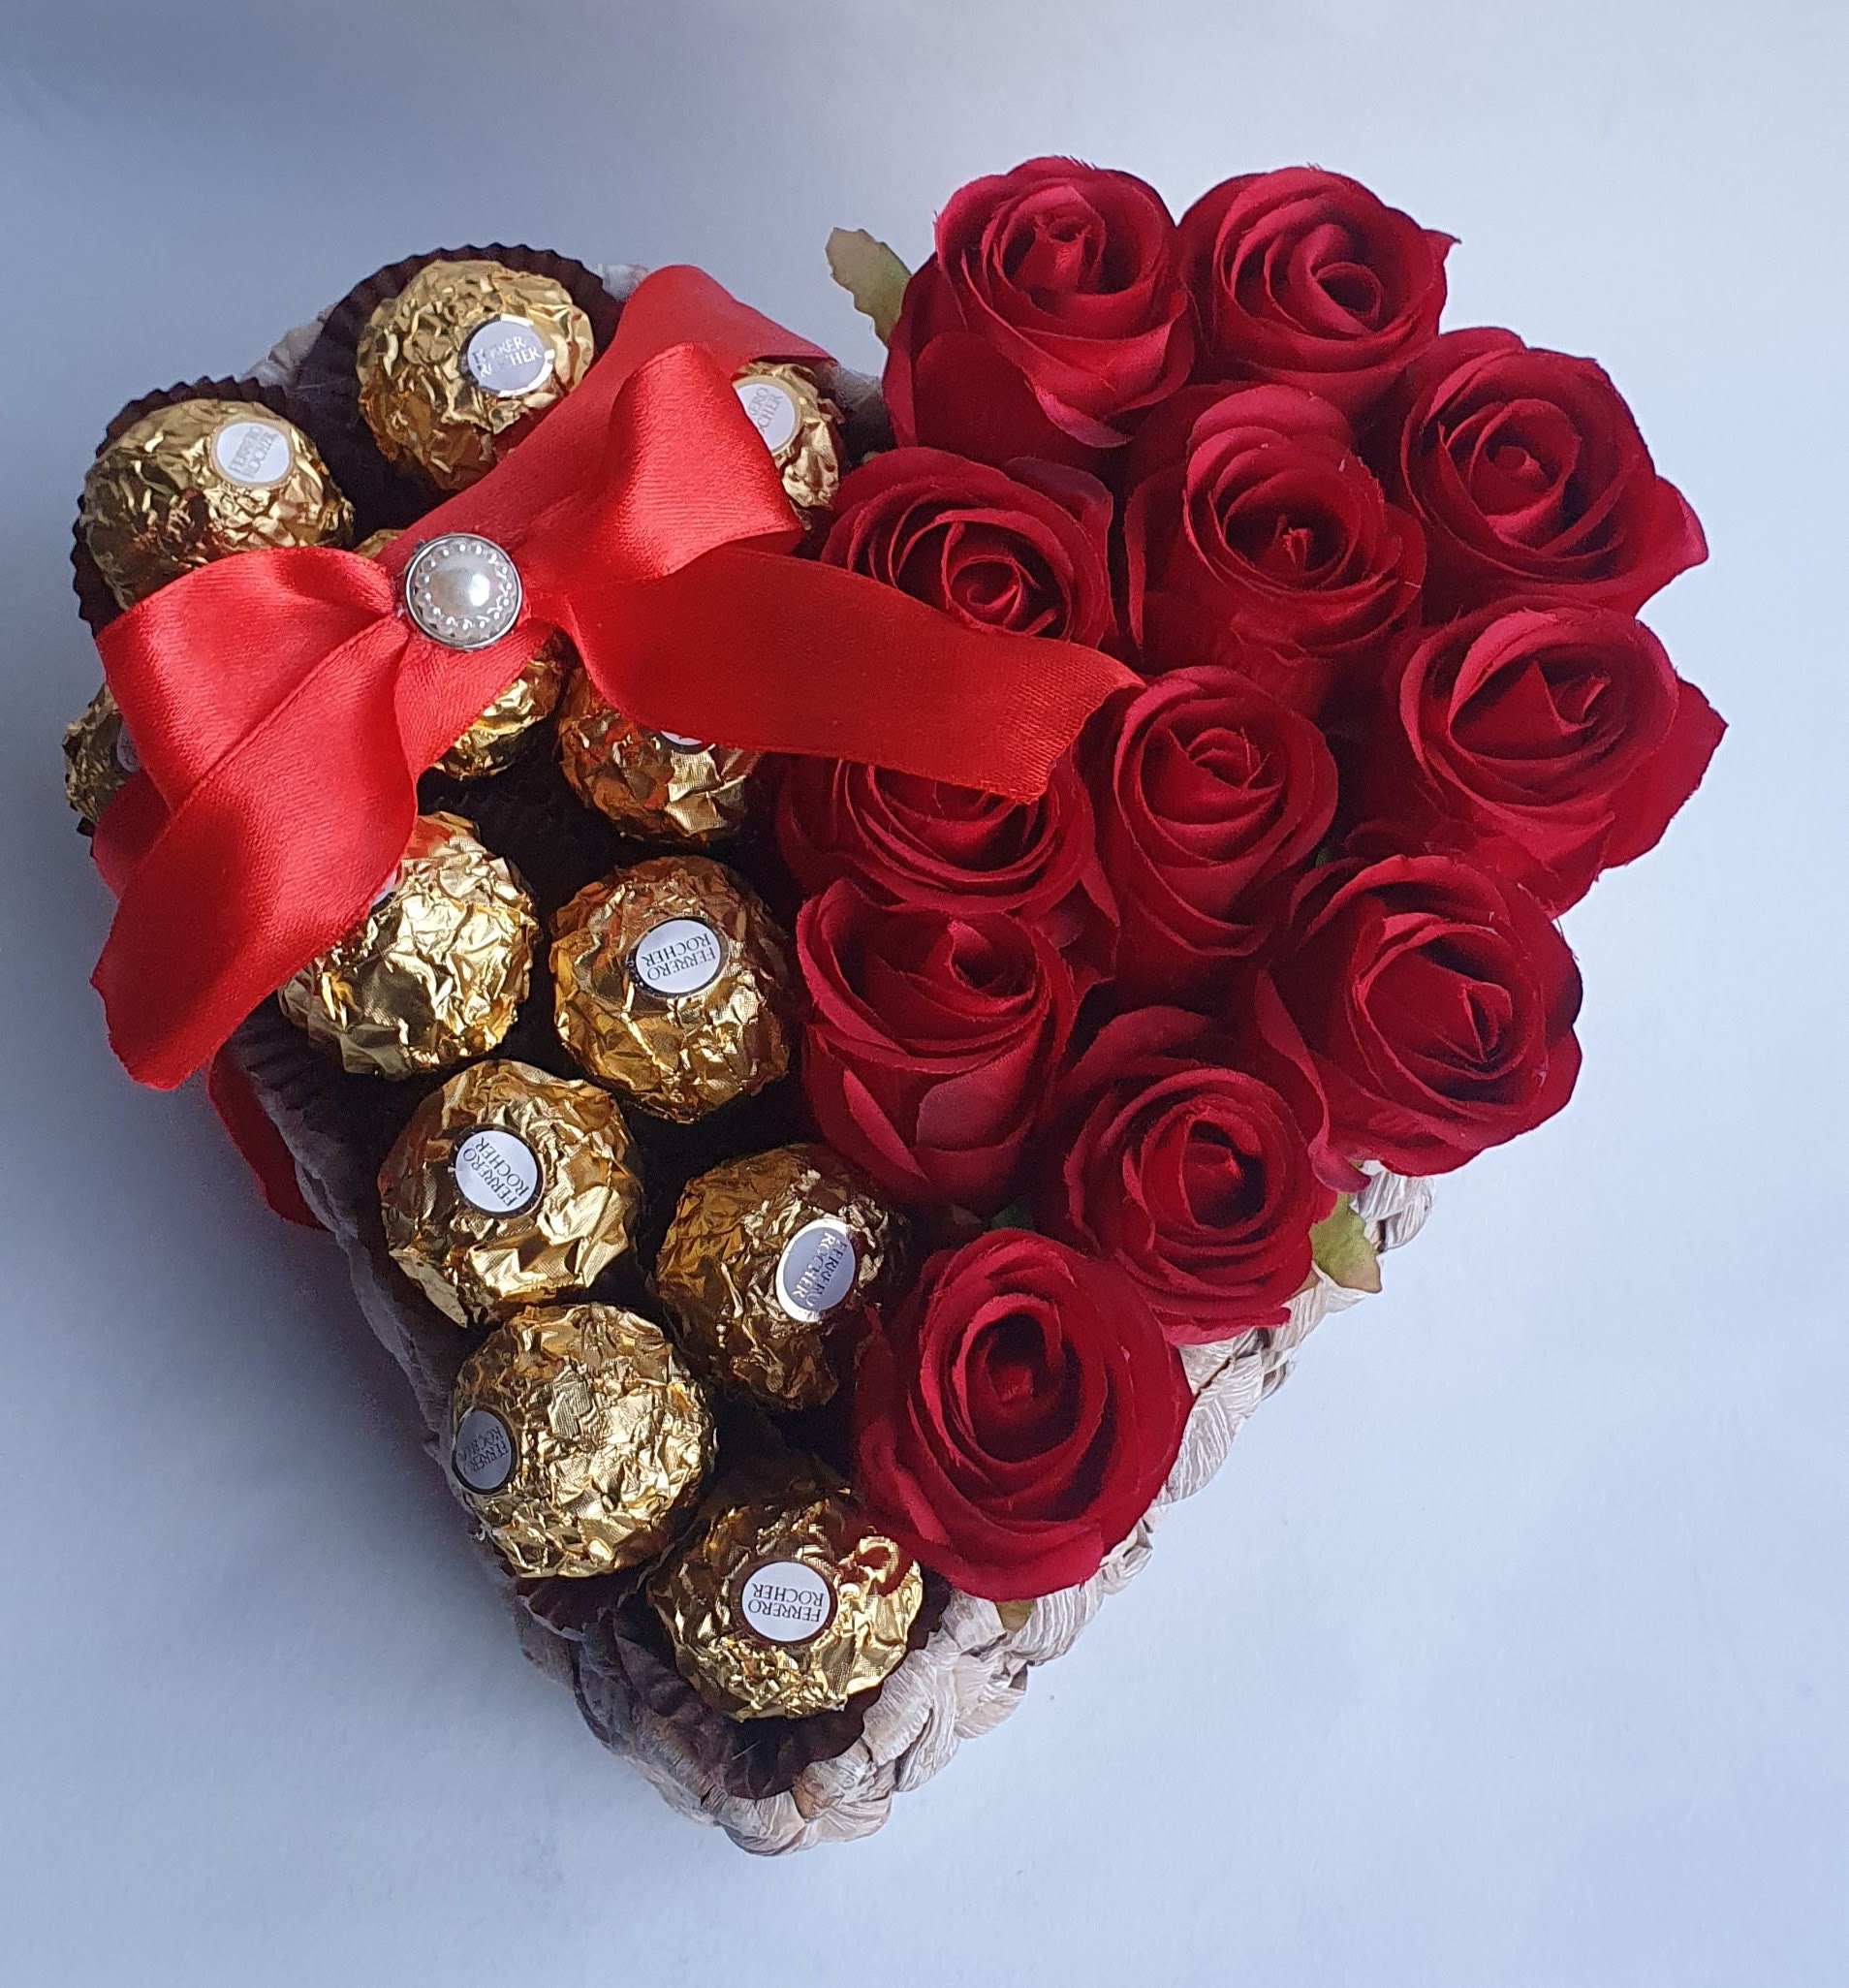 Ferrero Rocher - Per San Valentino condividi un messaggio